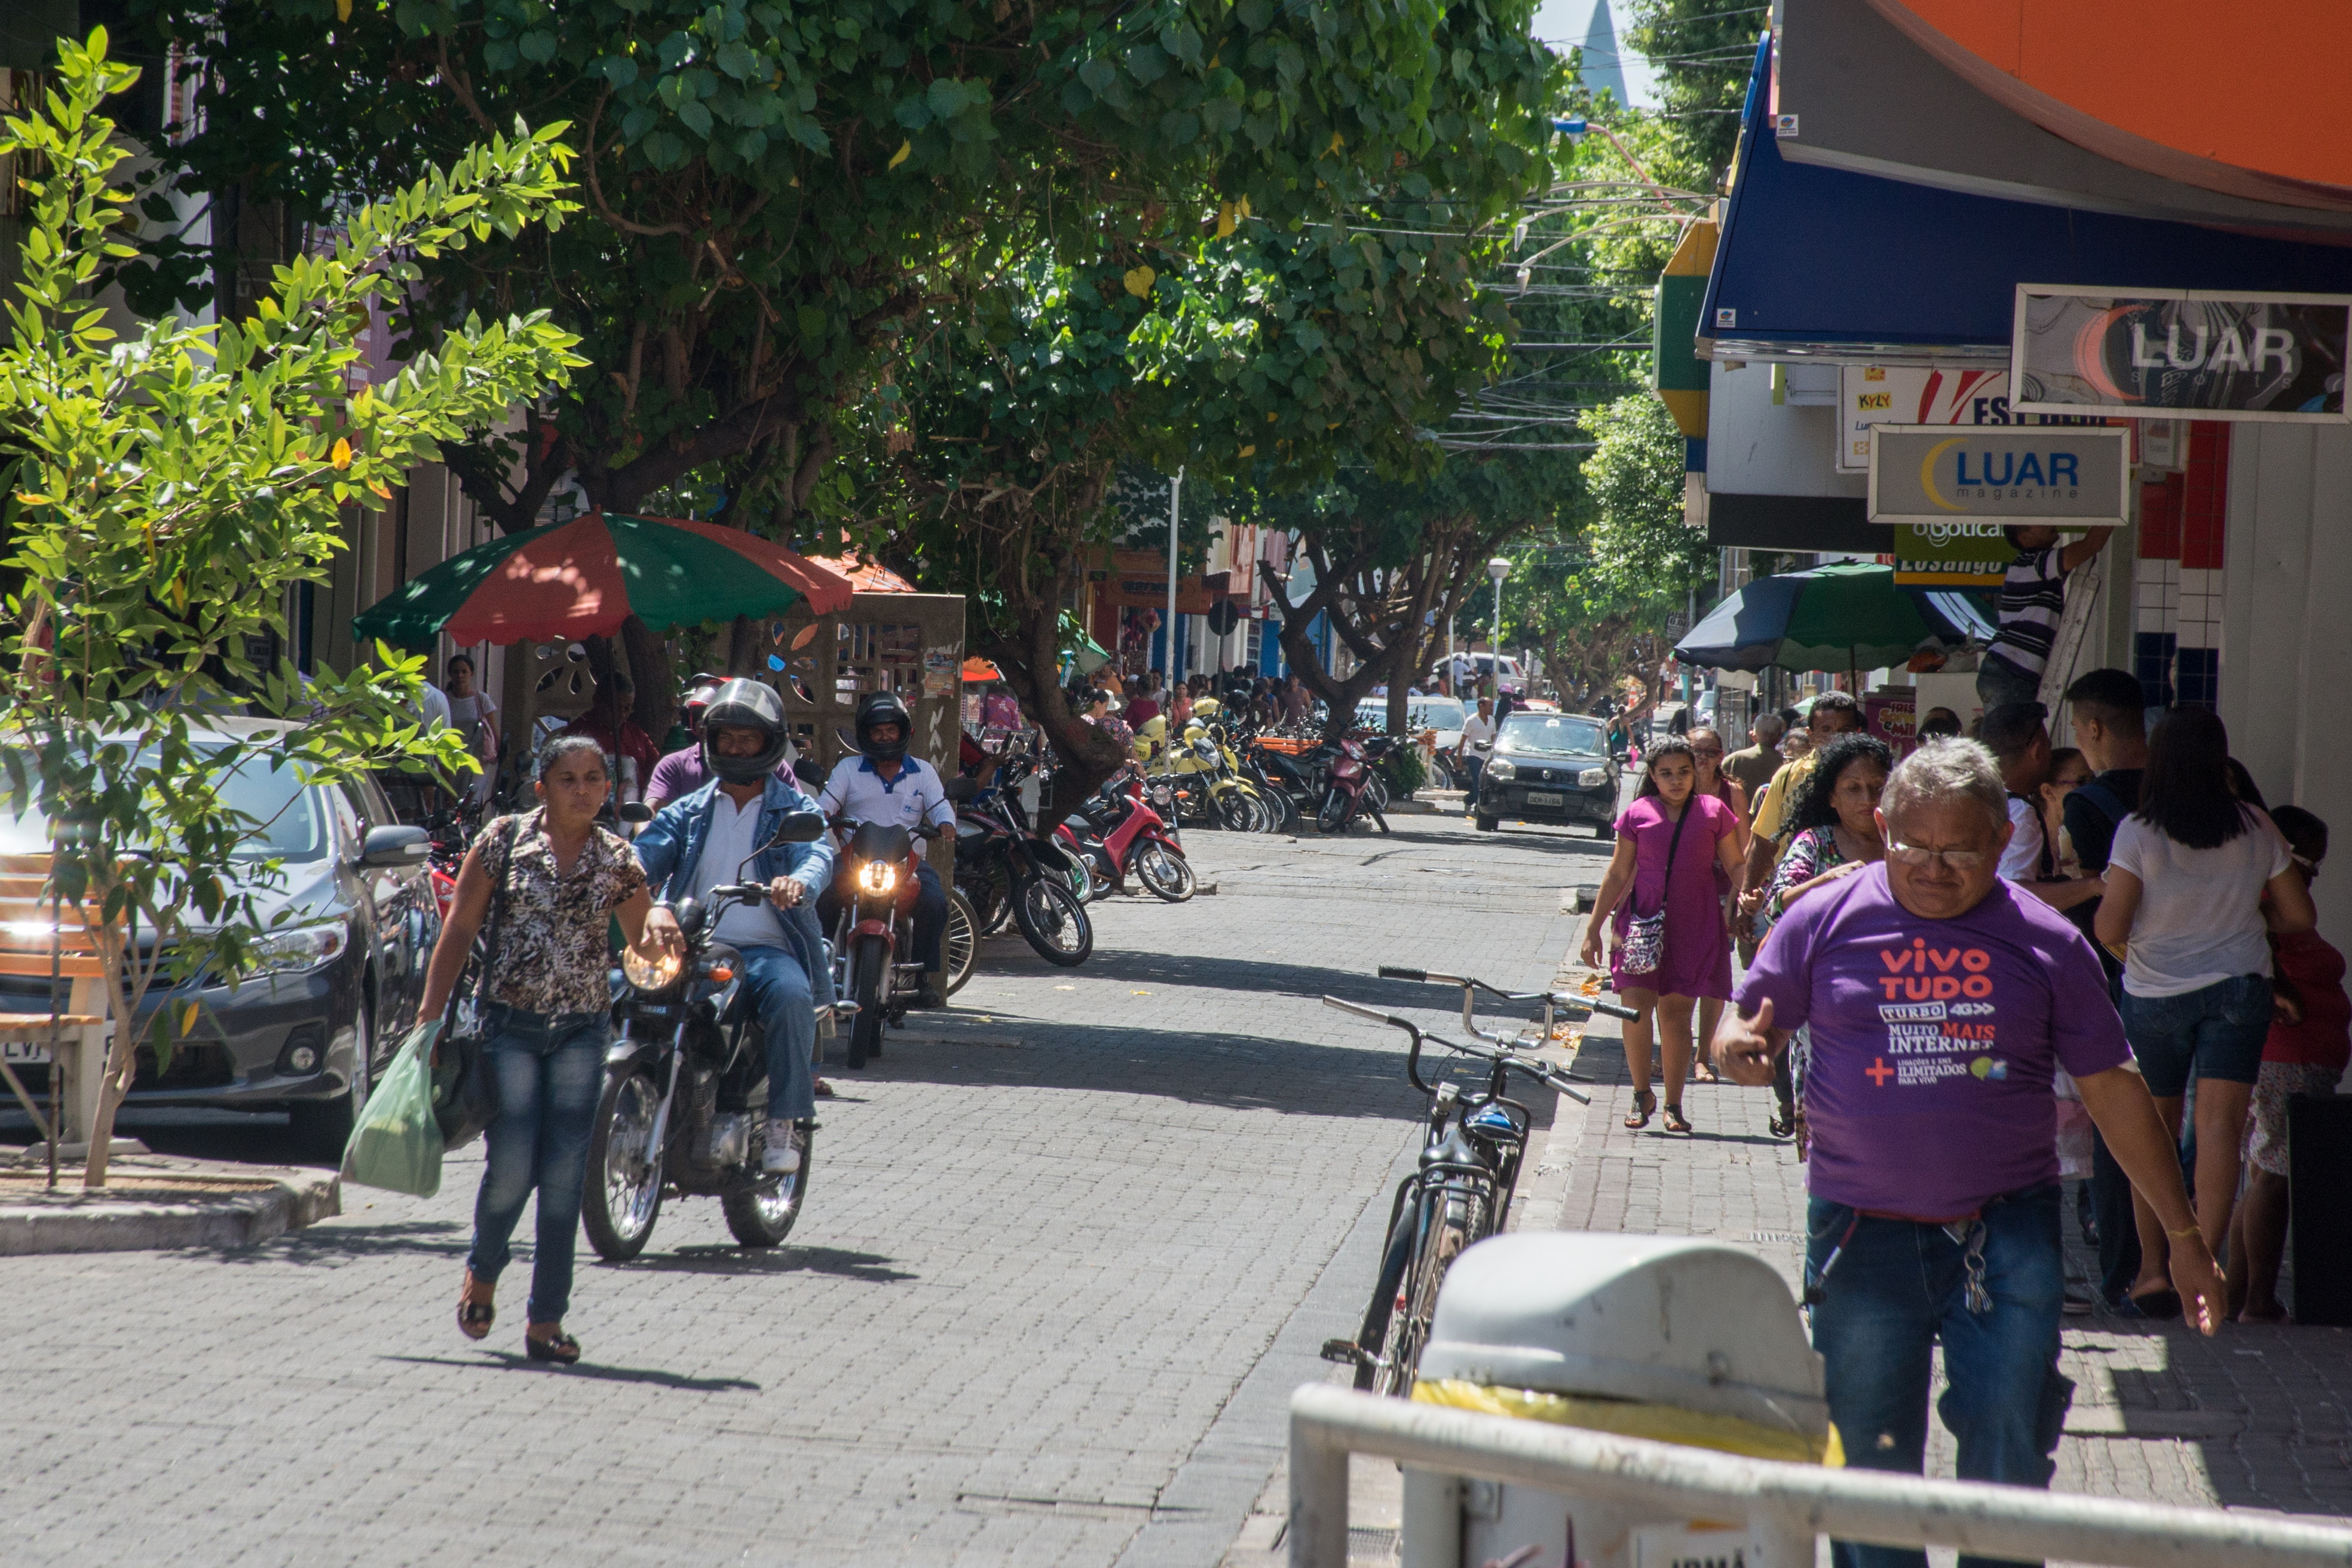 Feriado de Tiradentes: Veja como vai funcionar o comércio em Teresina